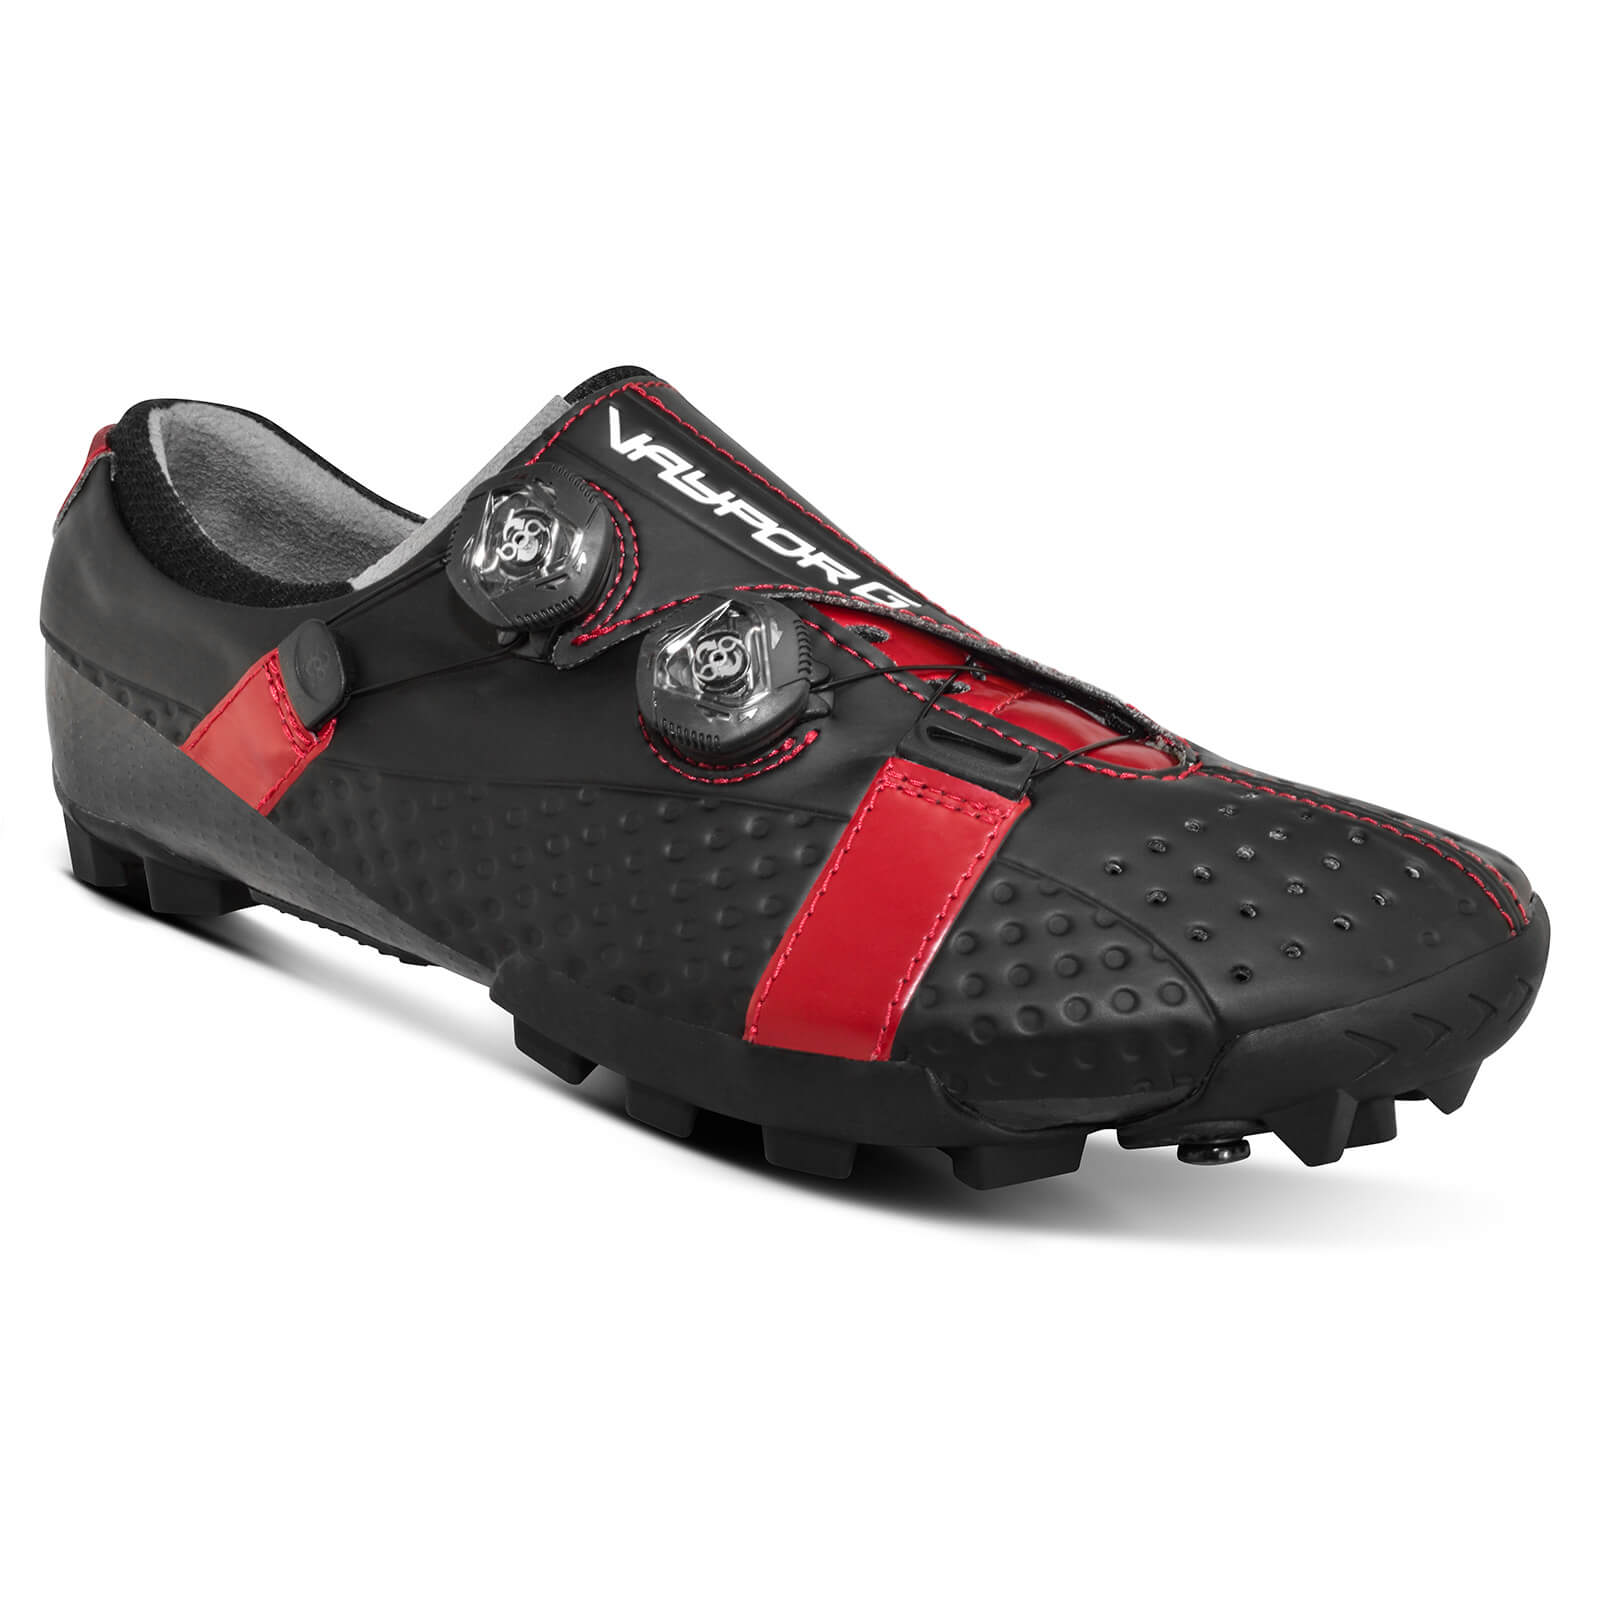 Bont Vaypor G Road Shoes - EU 41 - Black/Red